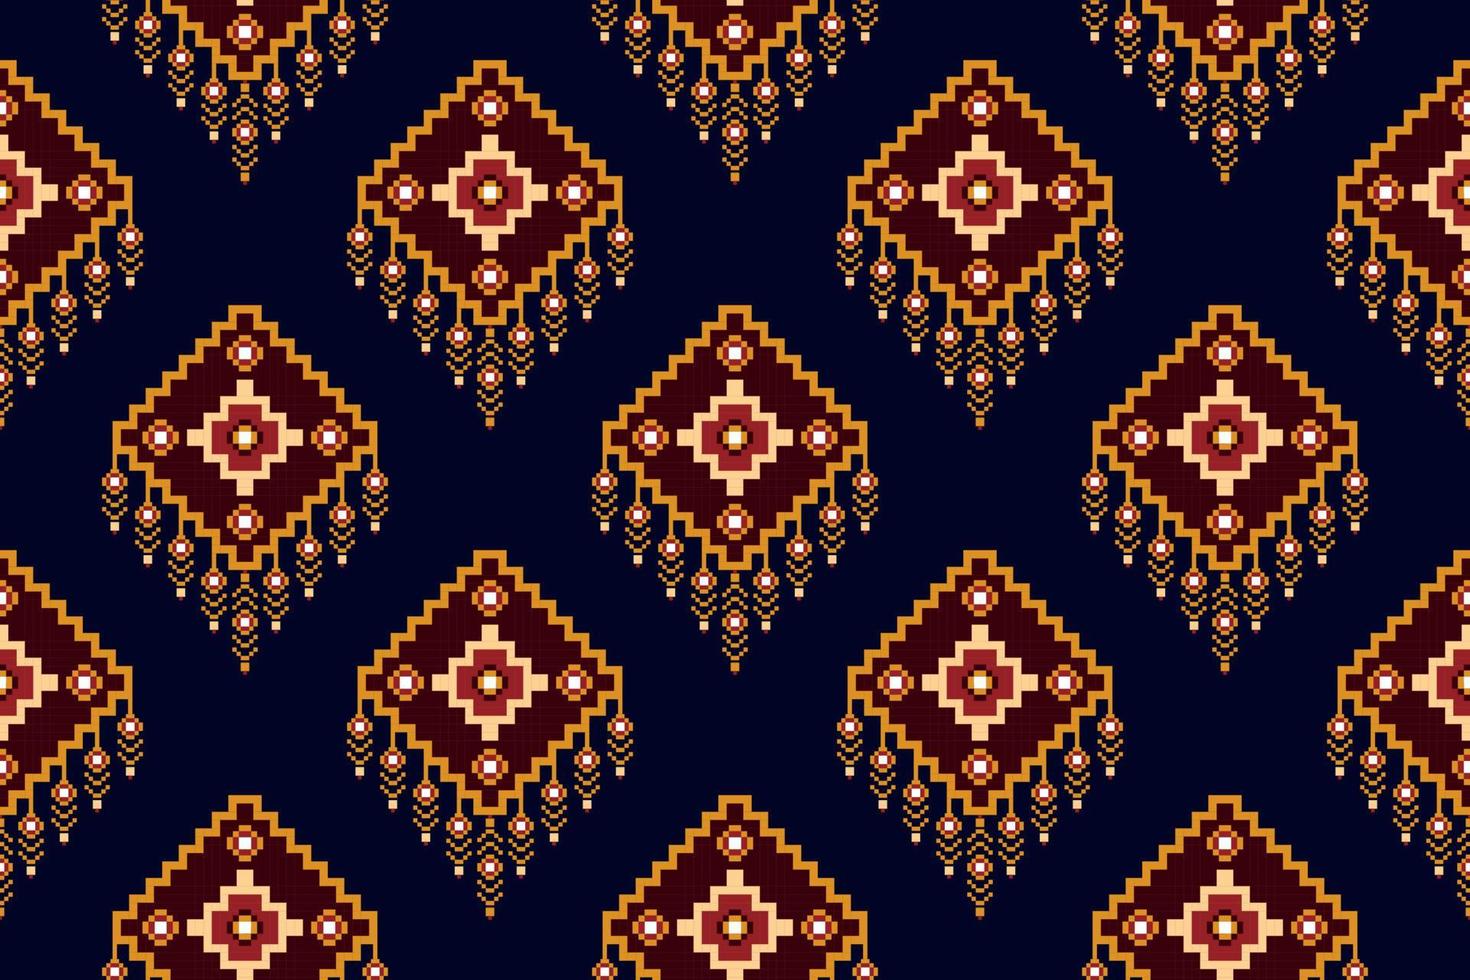 ikat etnisch naadloos patroon ontwerp. aztec kleding stof tapijt boho mandala's textiel decor behang. tribal inheems motief bloem traditioneel borduurwerk vector geïllustreerd achtergrond